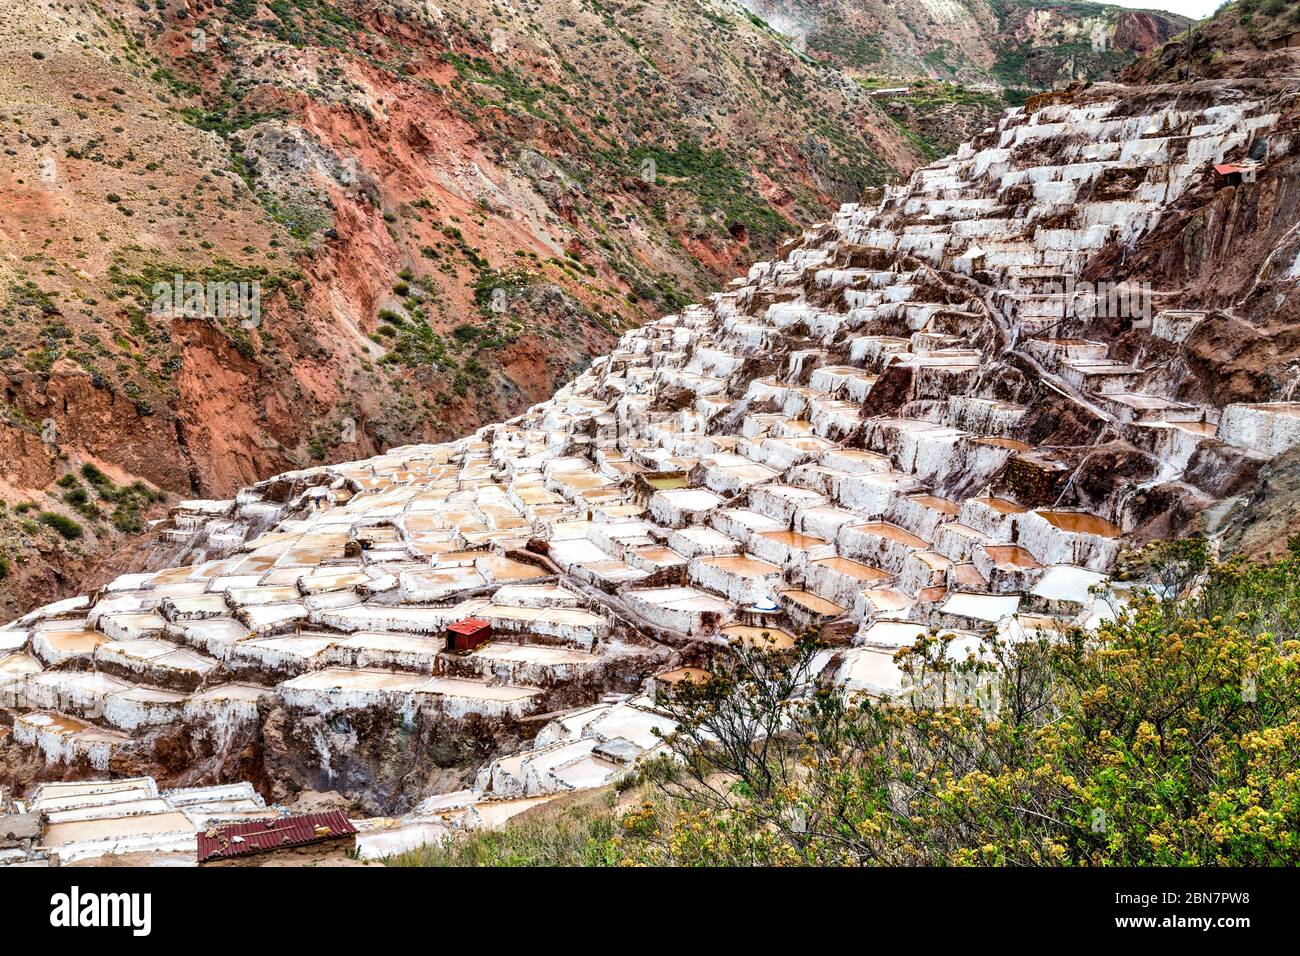 Estanques de sal en terrazas de Maras (Salinas de Maras), Valle Sagrado, Perú Foto de stock